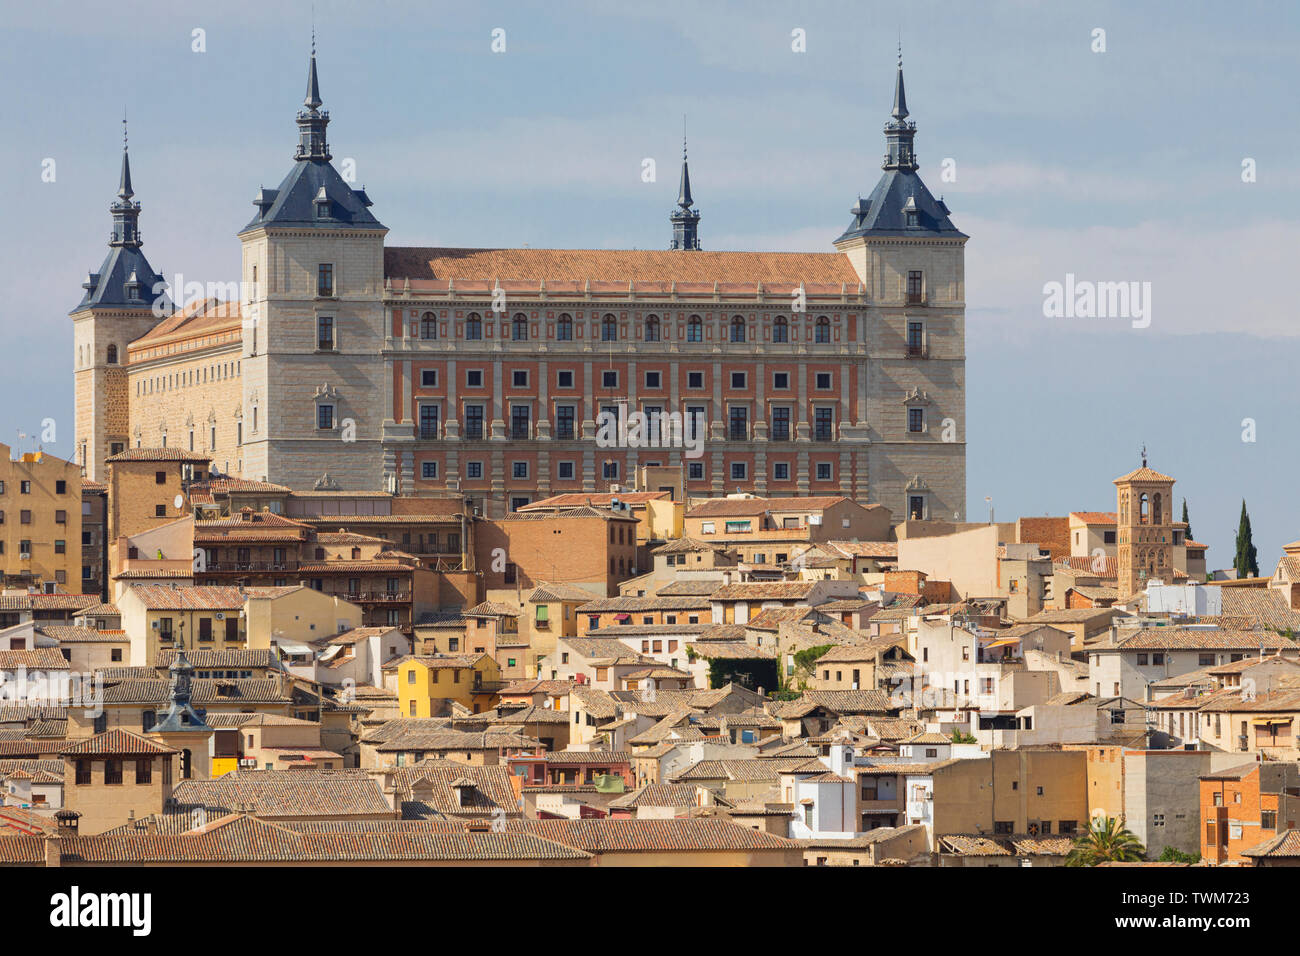 Das Alcazar, die Provinz Toledo, Toledo, Kastilien-La Mancha Spanien. Toledo ist ein UNESCO-Weltkulturerbe. Stockfoto